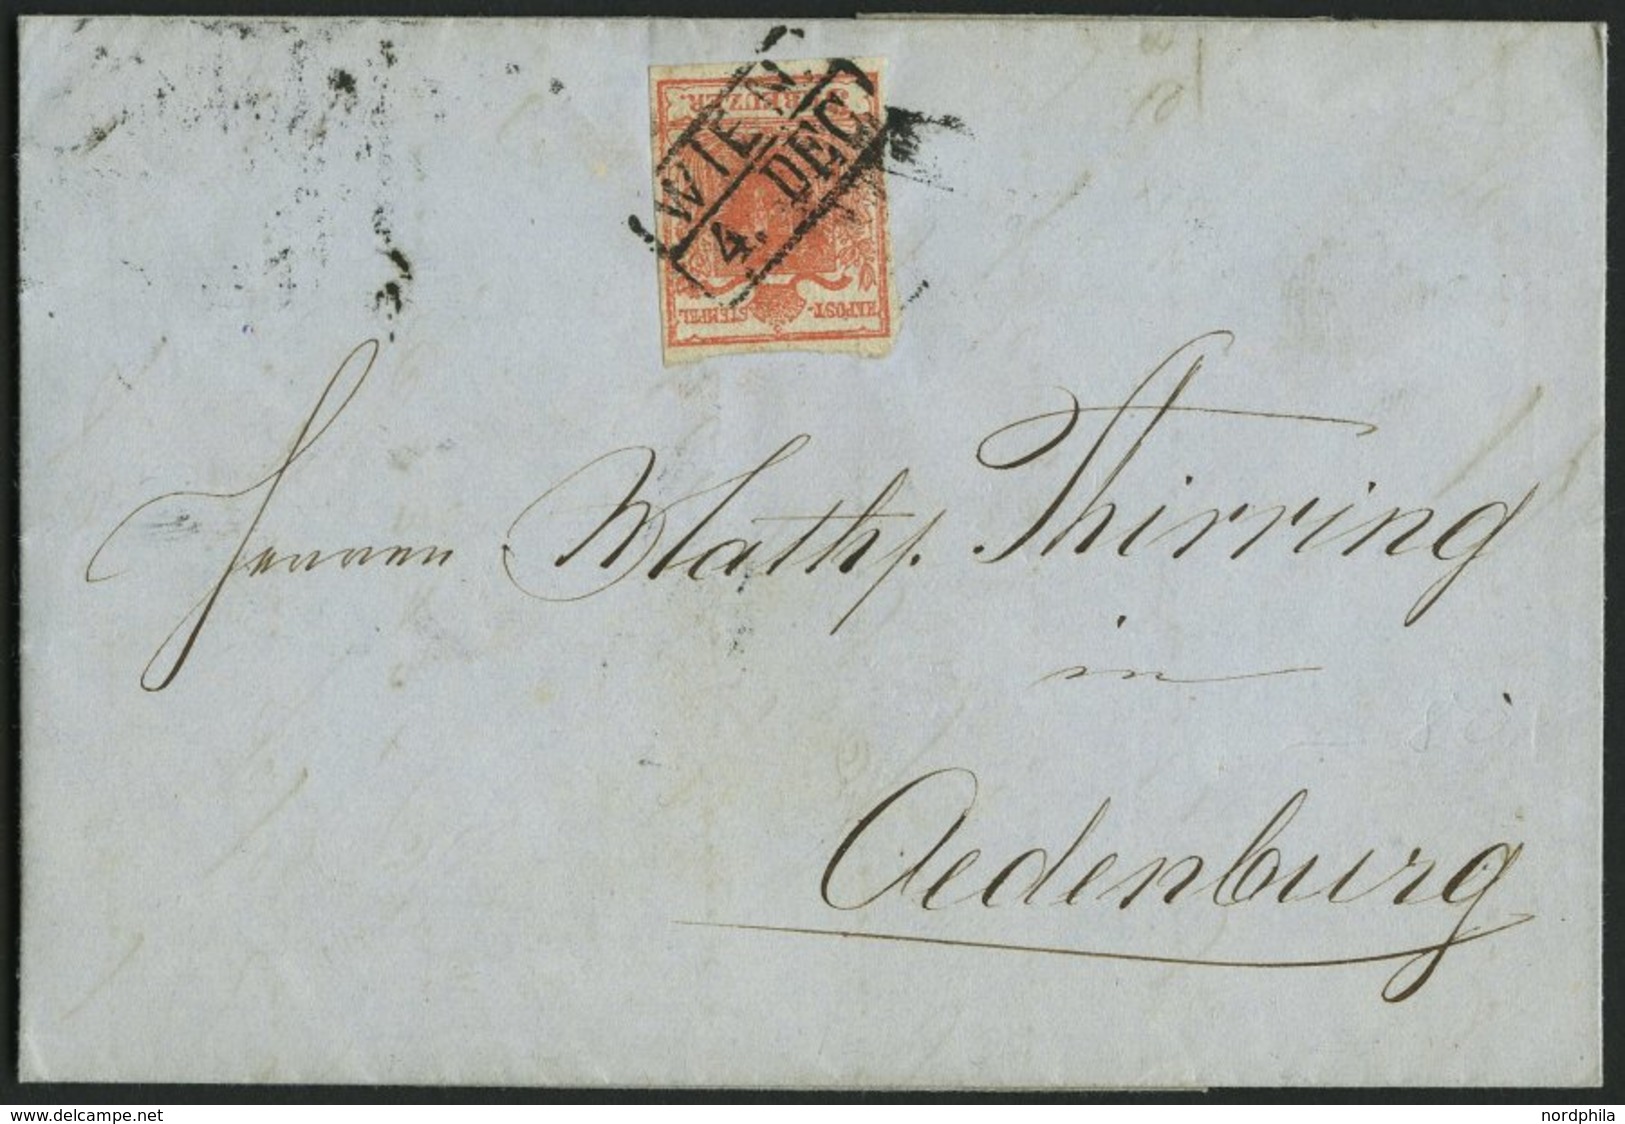 ÖSTERREICH 3X BRIEF, 1850, 3 Kr. Ziegelrot, Handpapier, Type Ia, R2 WIEN, Zwergenschnitt, Zweiseitig Gerissen, Prachtbri - Used Stamps